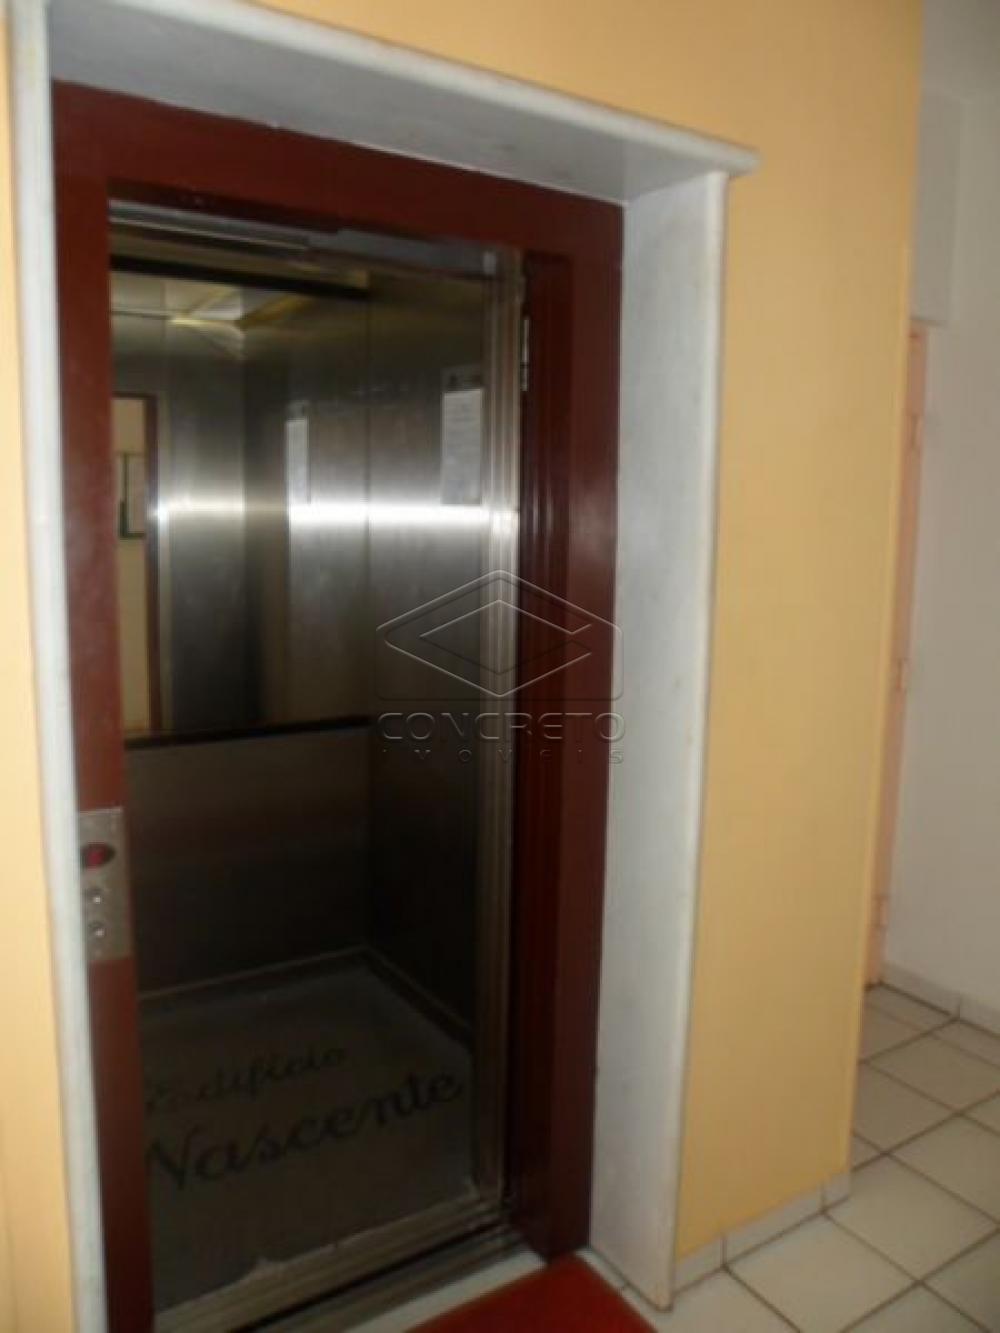 Alugar Apartamento / Padrão em Bauru R$ 800,00 - Foto 5